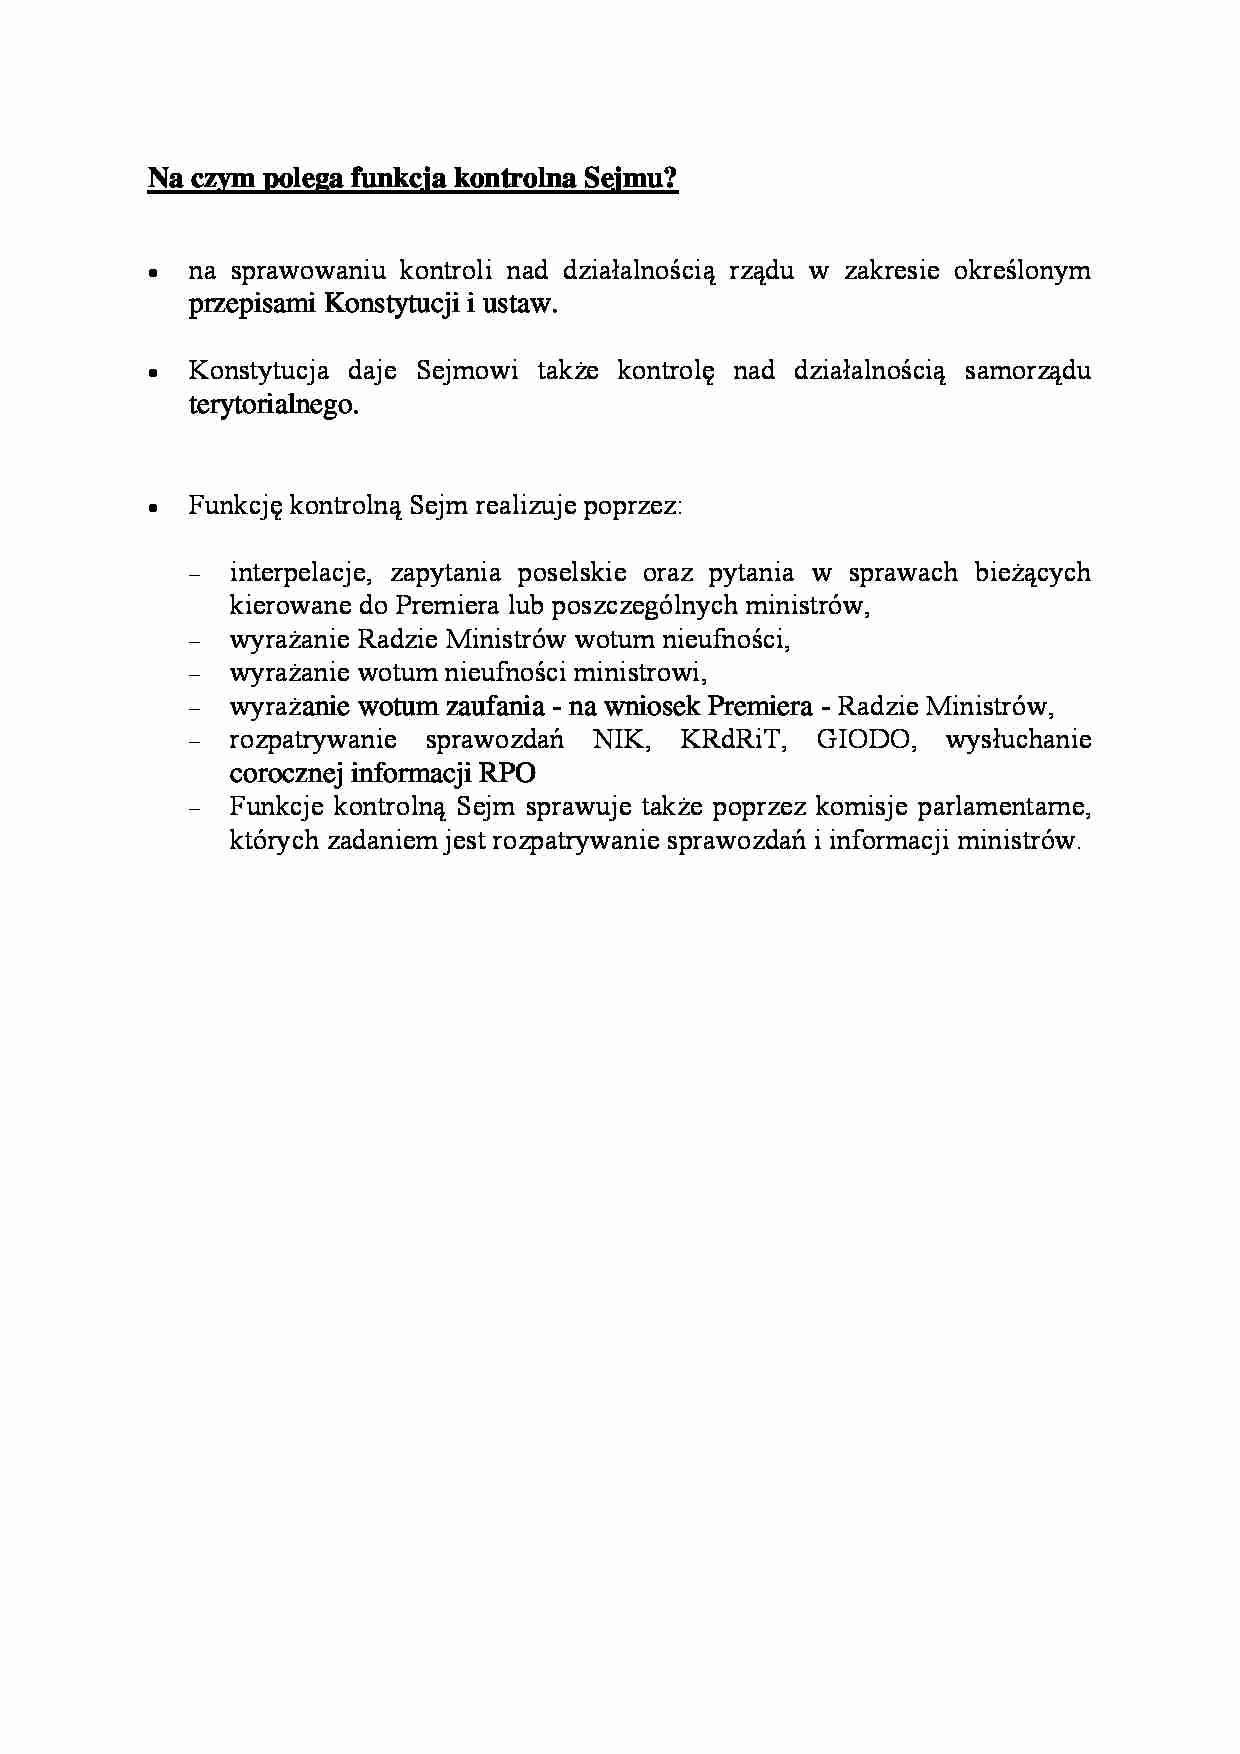 Funkcja kontrolna Sejmu - omówienie - strona 1